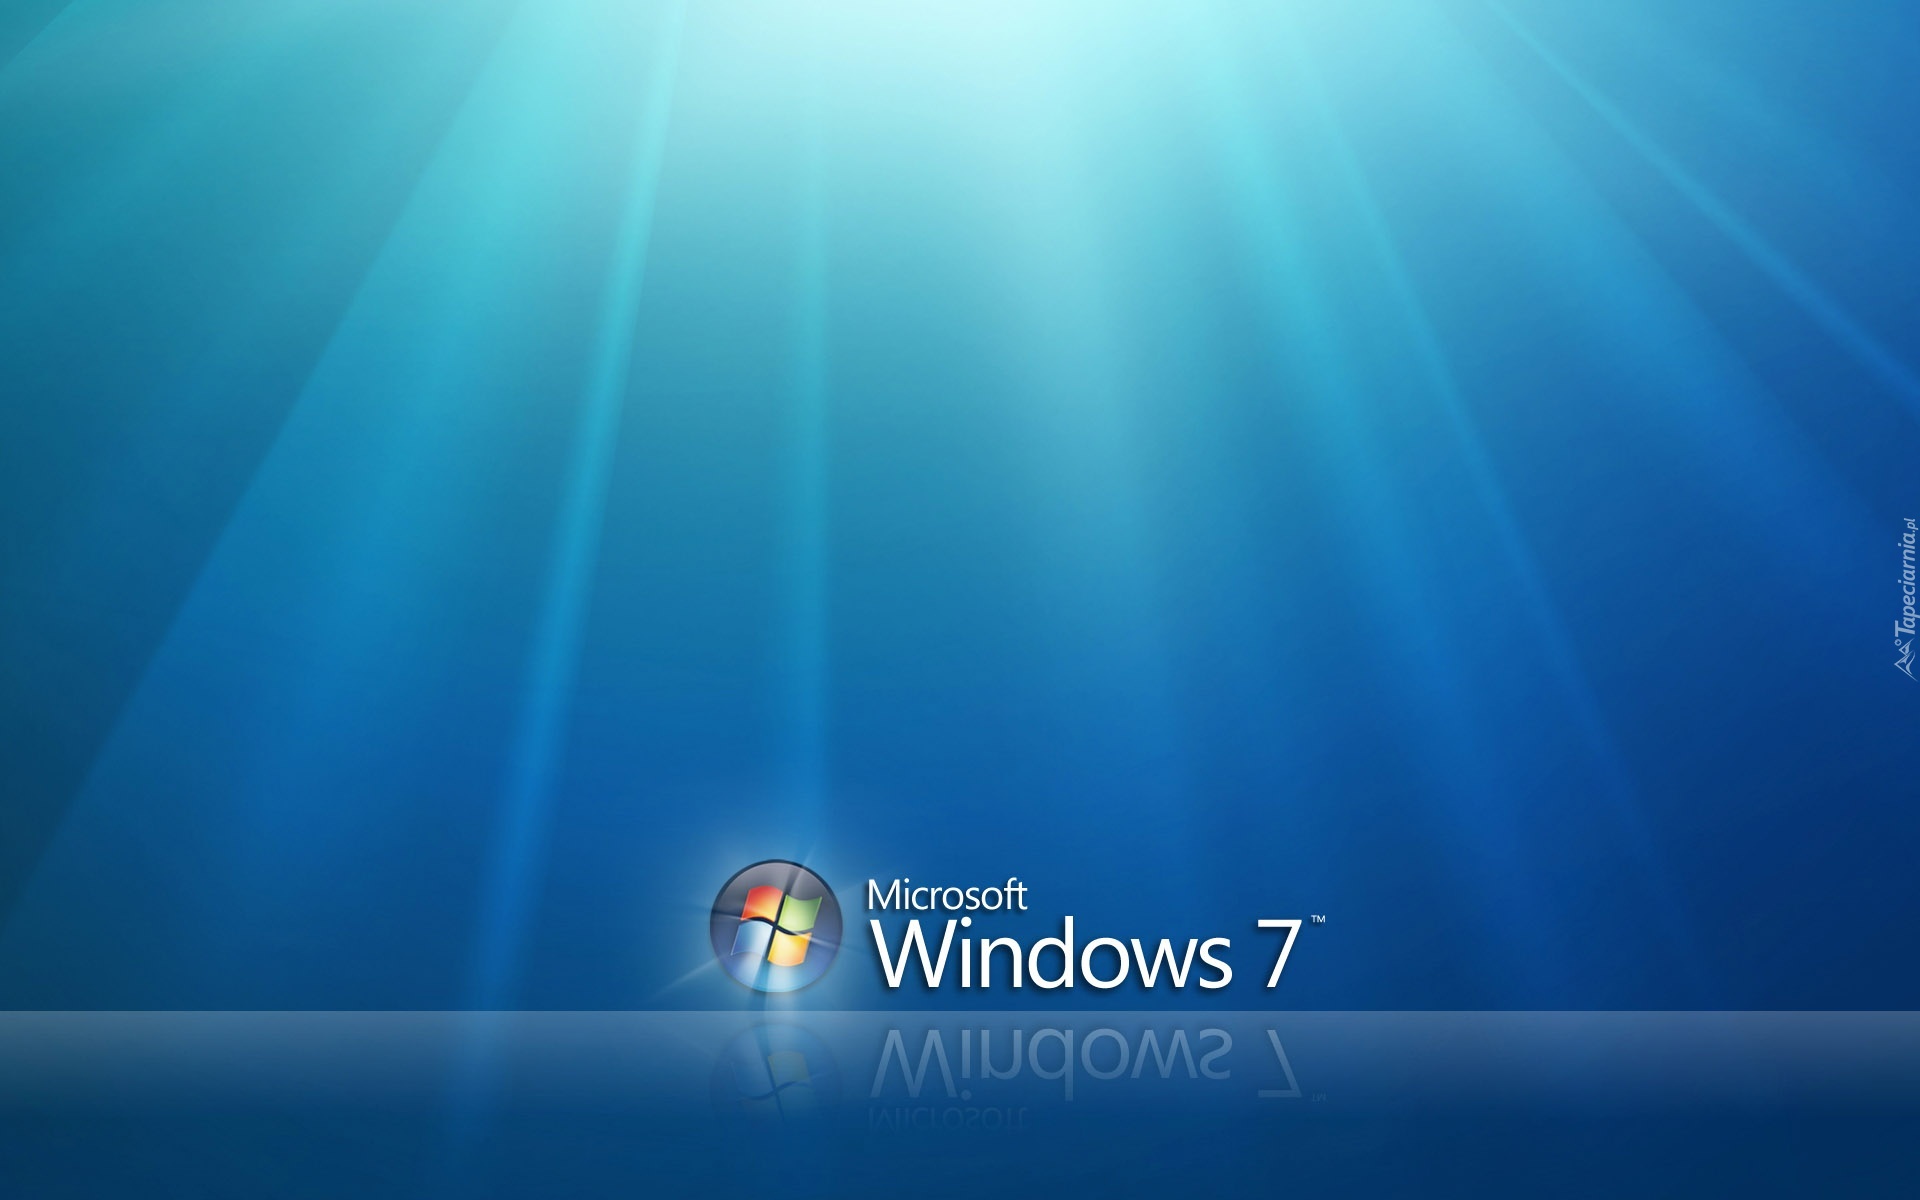 Promienie, Windows 7